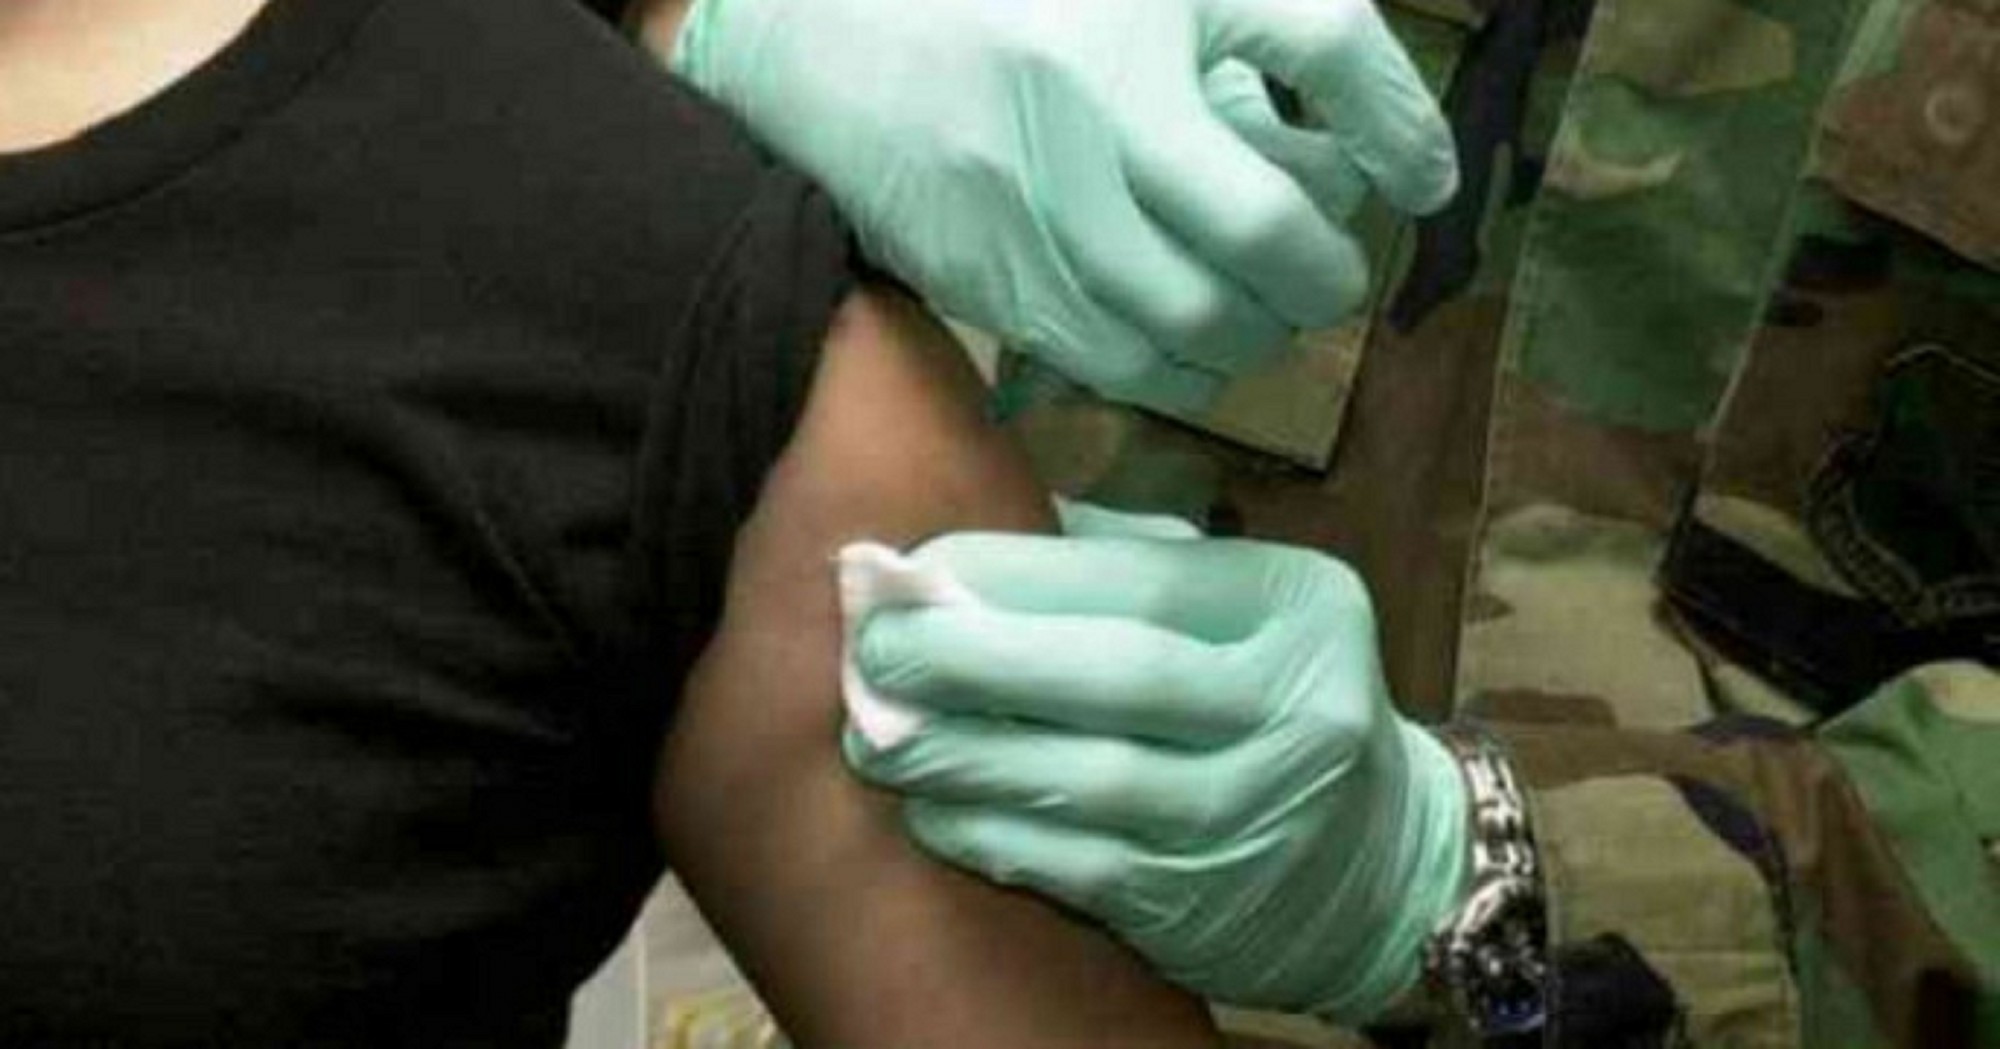 Нужно ли заставлять людей вакцинироваться? Сложный вопрос